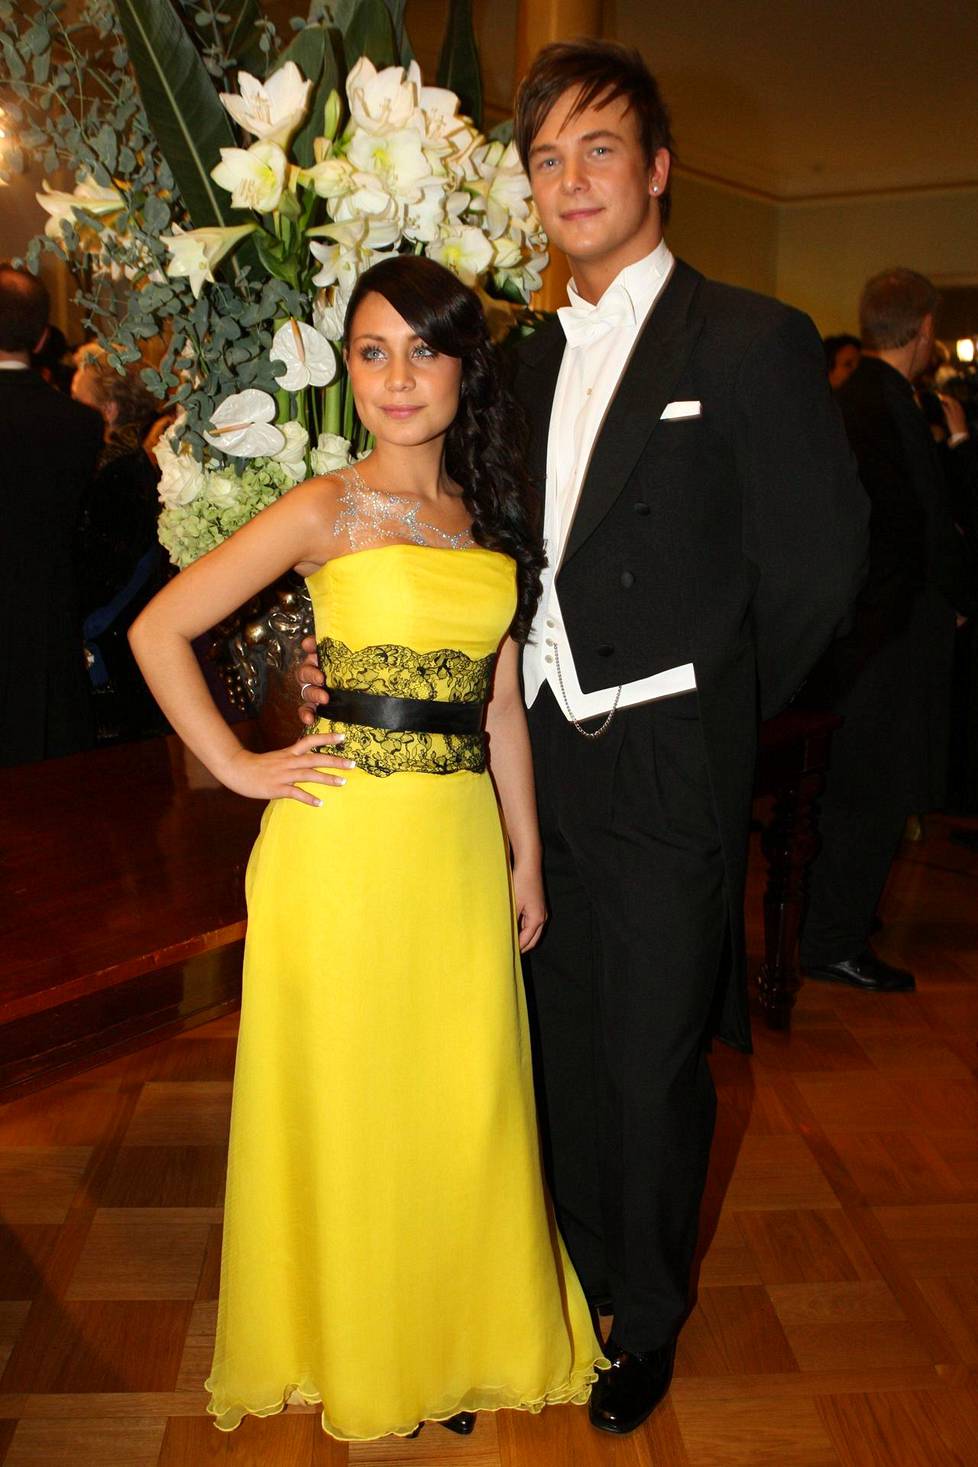 Anna Abreu ja hänen silloinen avopuolisonsa Panu Larnos olivat vuoden 2008 Linnan juhlien kuvatuimpia vieraita.